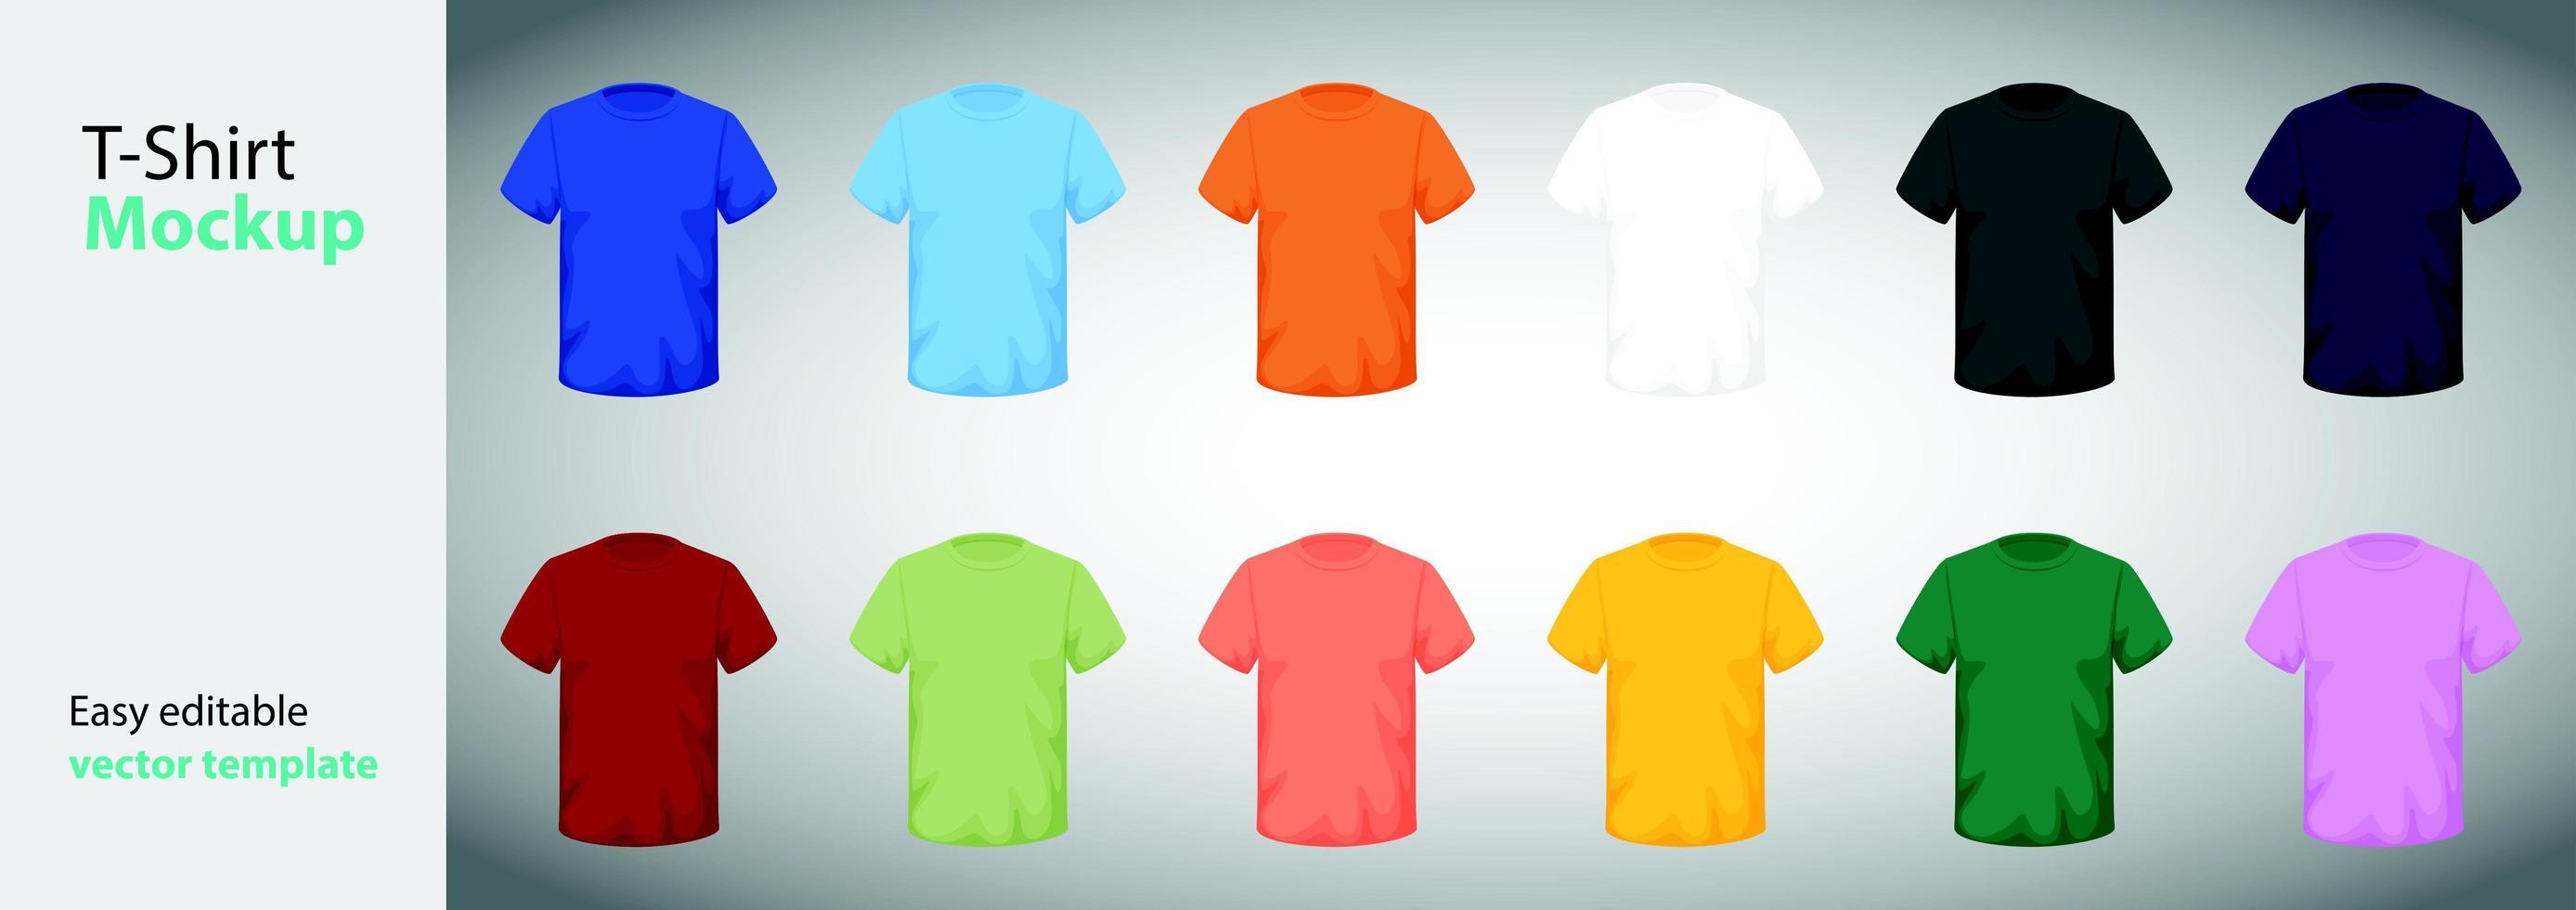 t-shirtmallar i olika storlekar och färger vektor